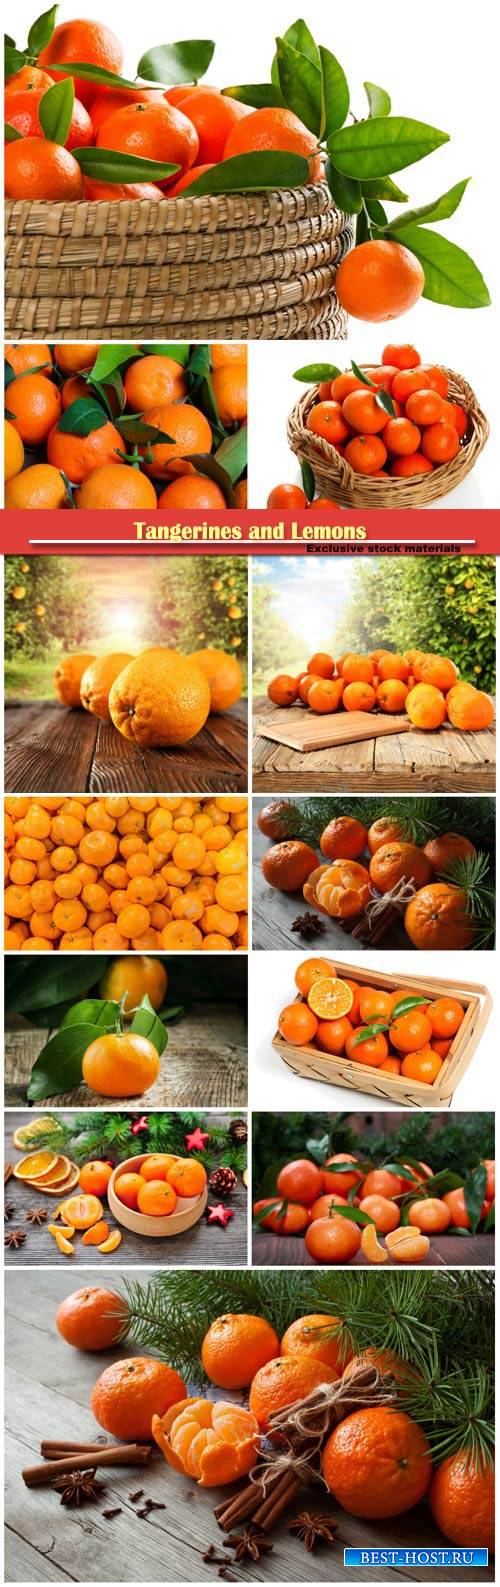 Tangerines and Lemons